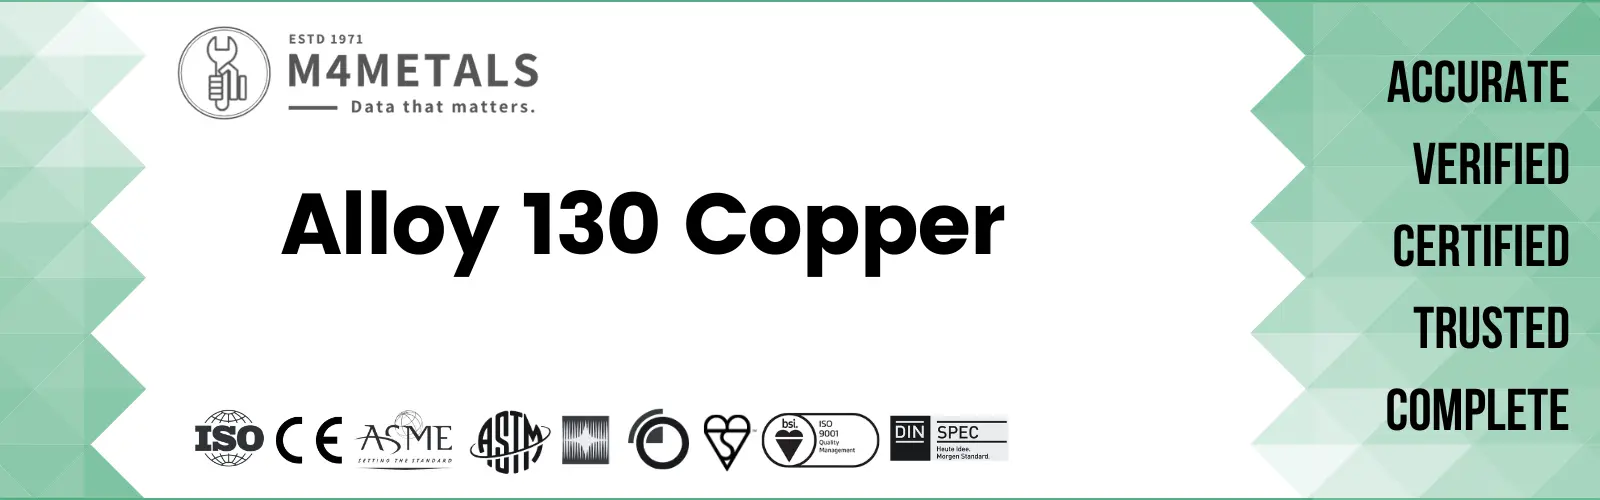 Copper Alloy 130